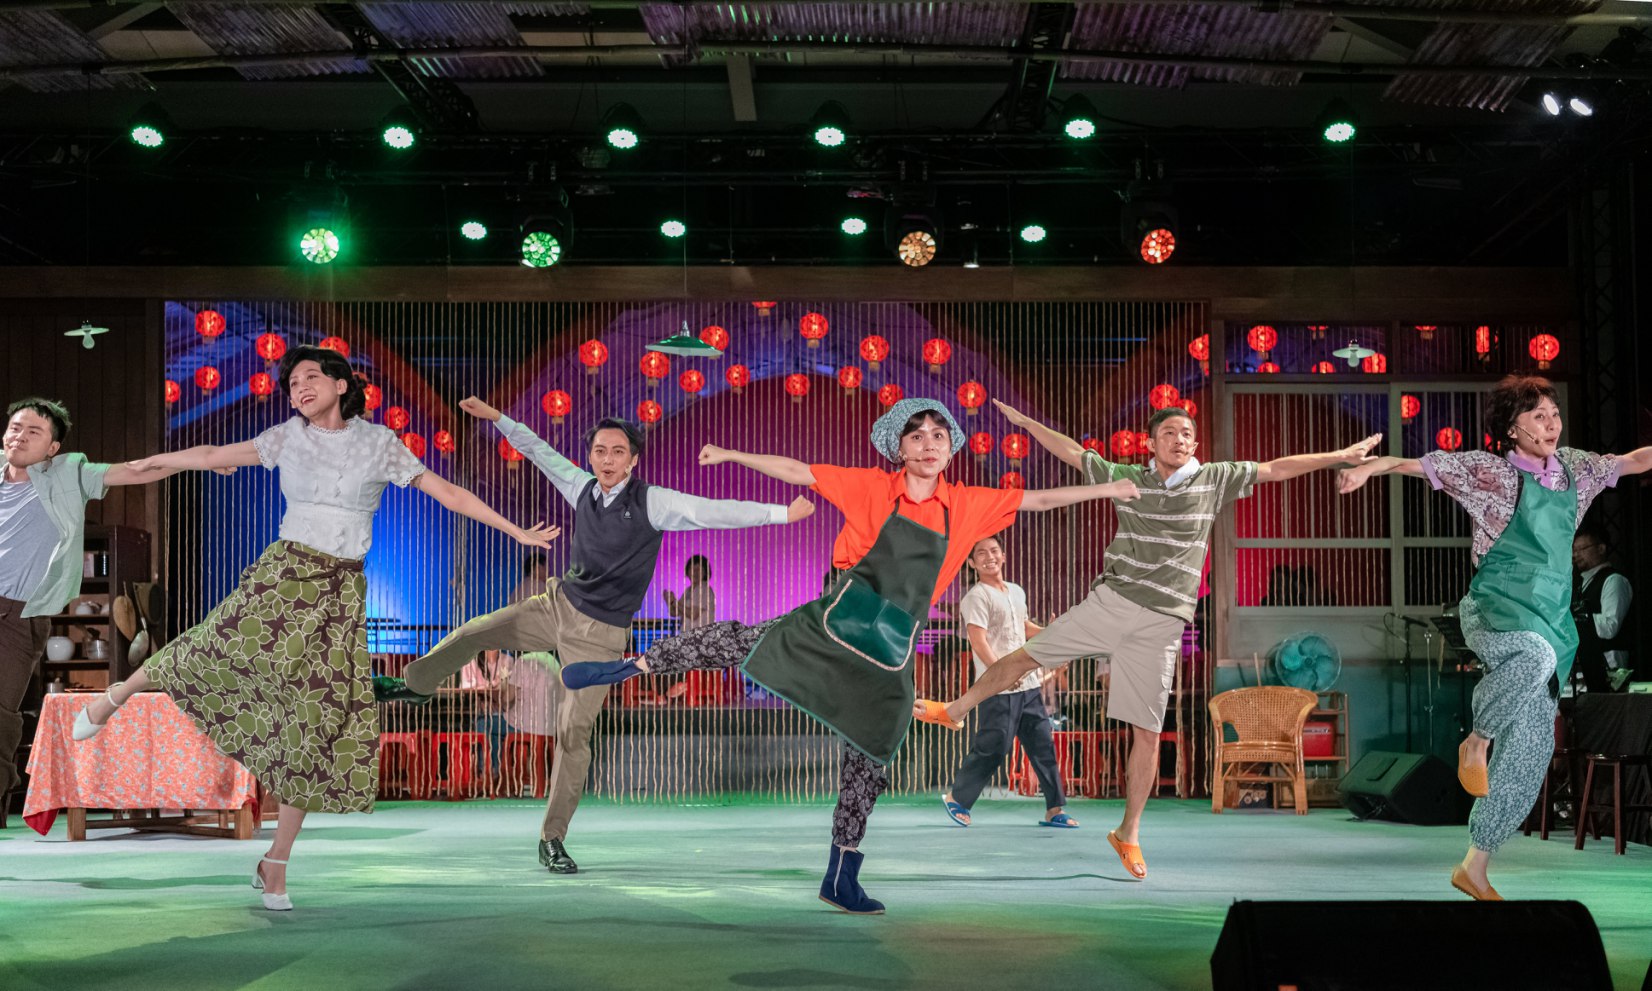 國家兩廳院藝術出走新作《十二碗菜歌》以臺式歌舞劇帶給觀眾美好的劇場體驗@攝影李文..jpg